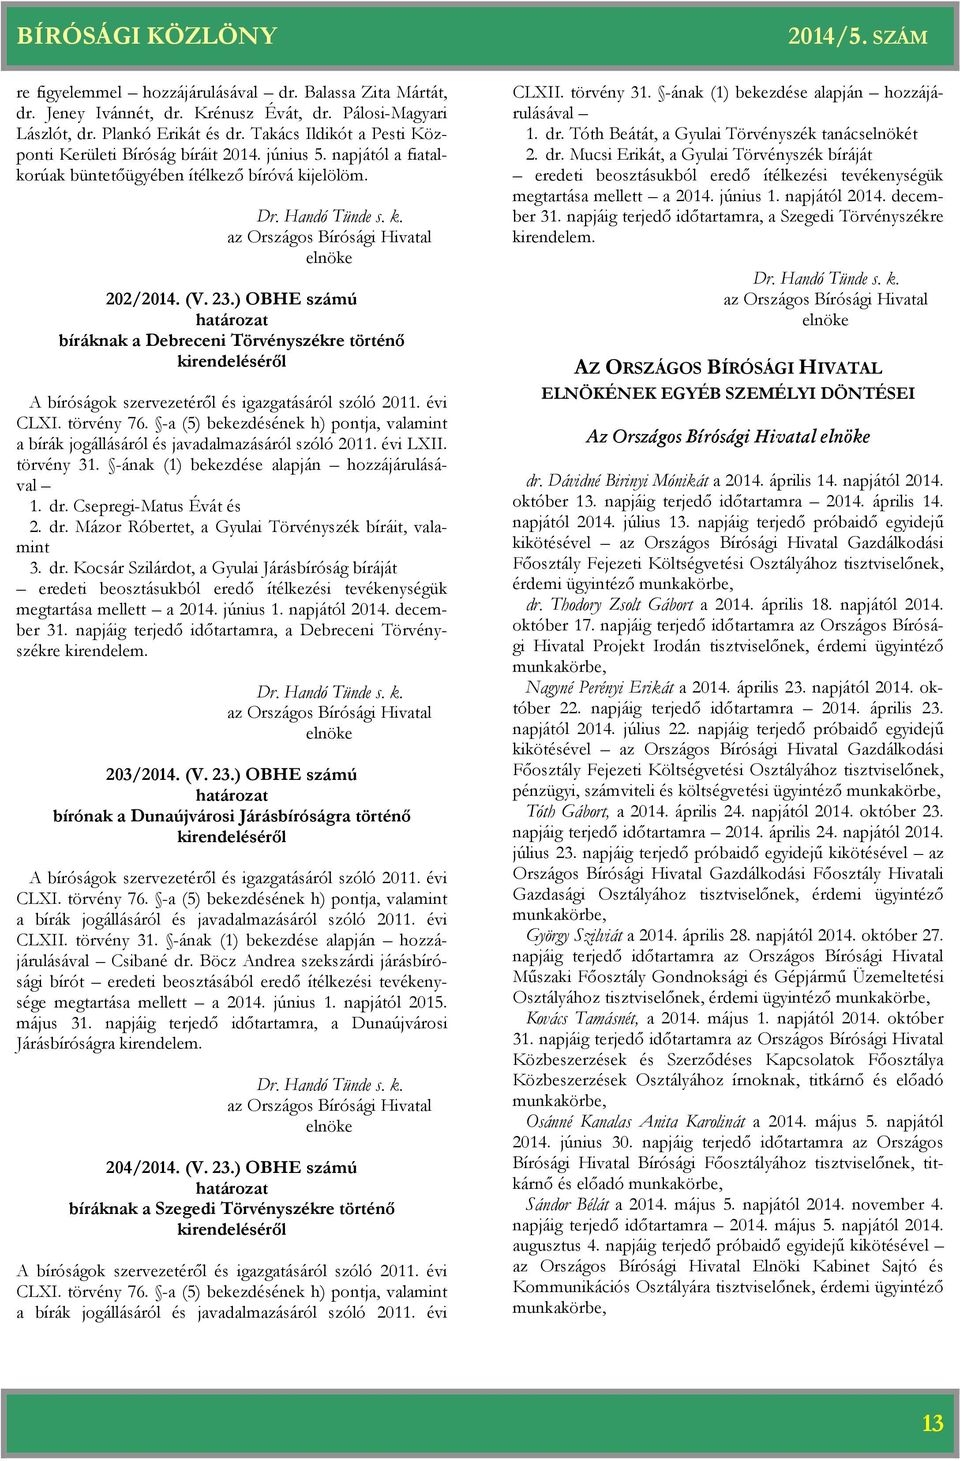 ) OBHE számú bíráknak a Debreceni Törvényszékre történő kirendeléséről CLXI. törvény 76. -a (5) bekezdésének h) pontja, valamint a bírák jogállásáról és javadalmazásáról szóló 2011. évi LXII.